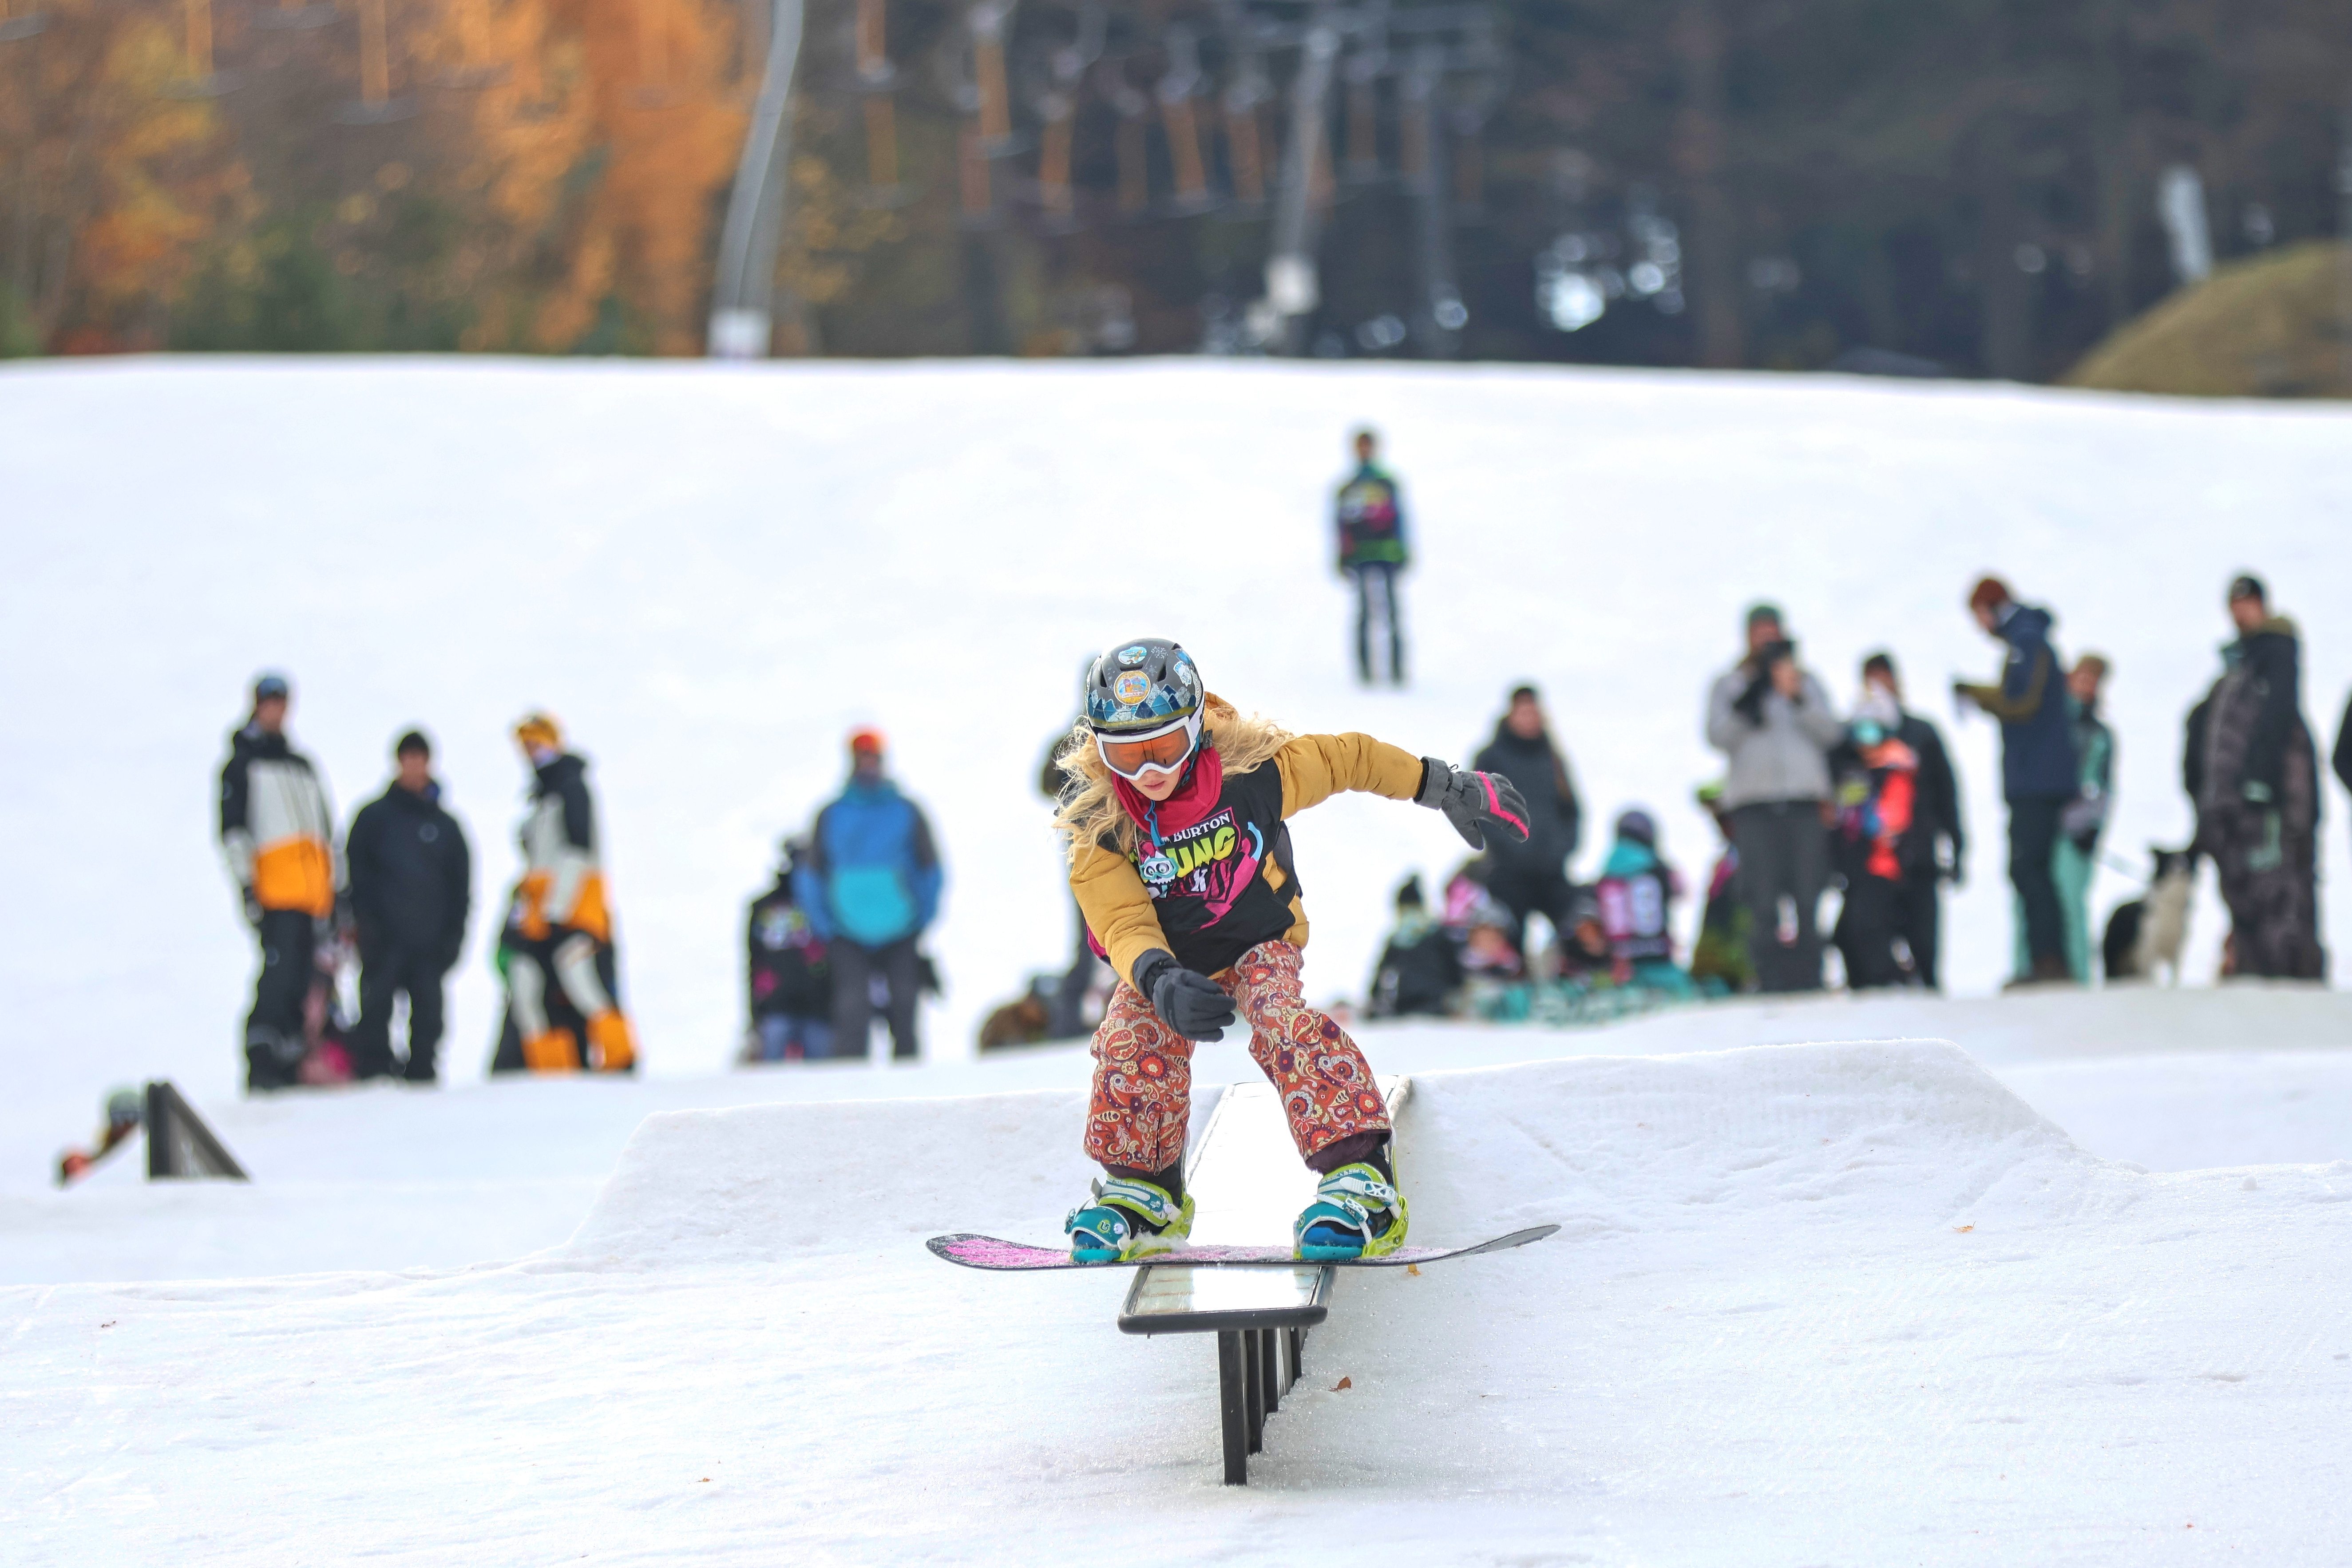 Družstvo snowboardistů Klubu Krušných hor i závodníků Sport Clubu 2000 úspěšně zahájilo závodní sezónu